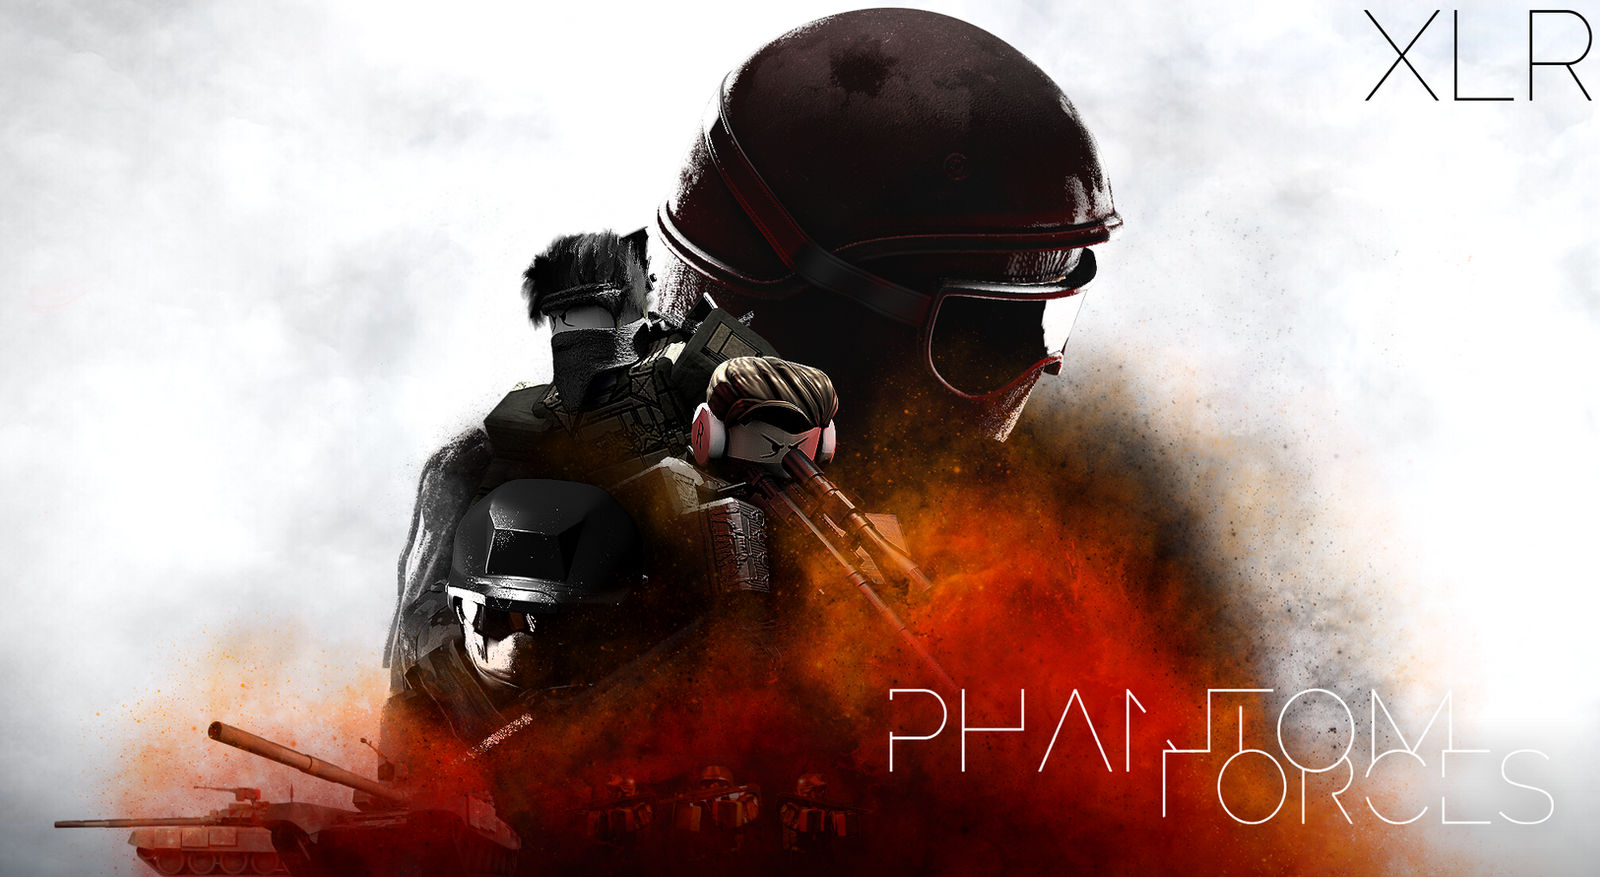 Phantom Forces UI I created : r/PhantomForces